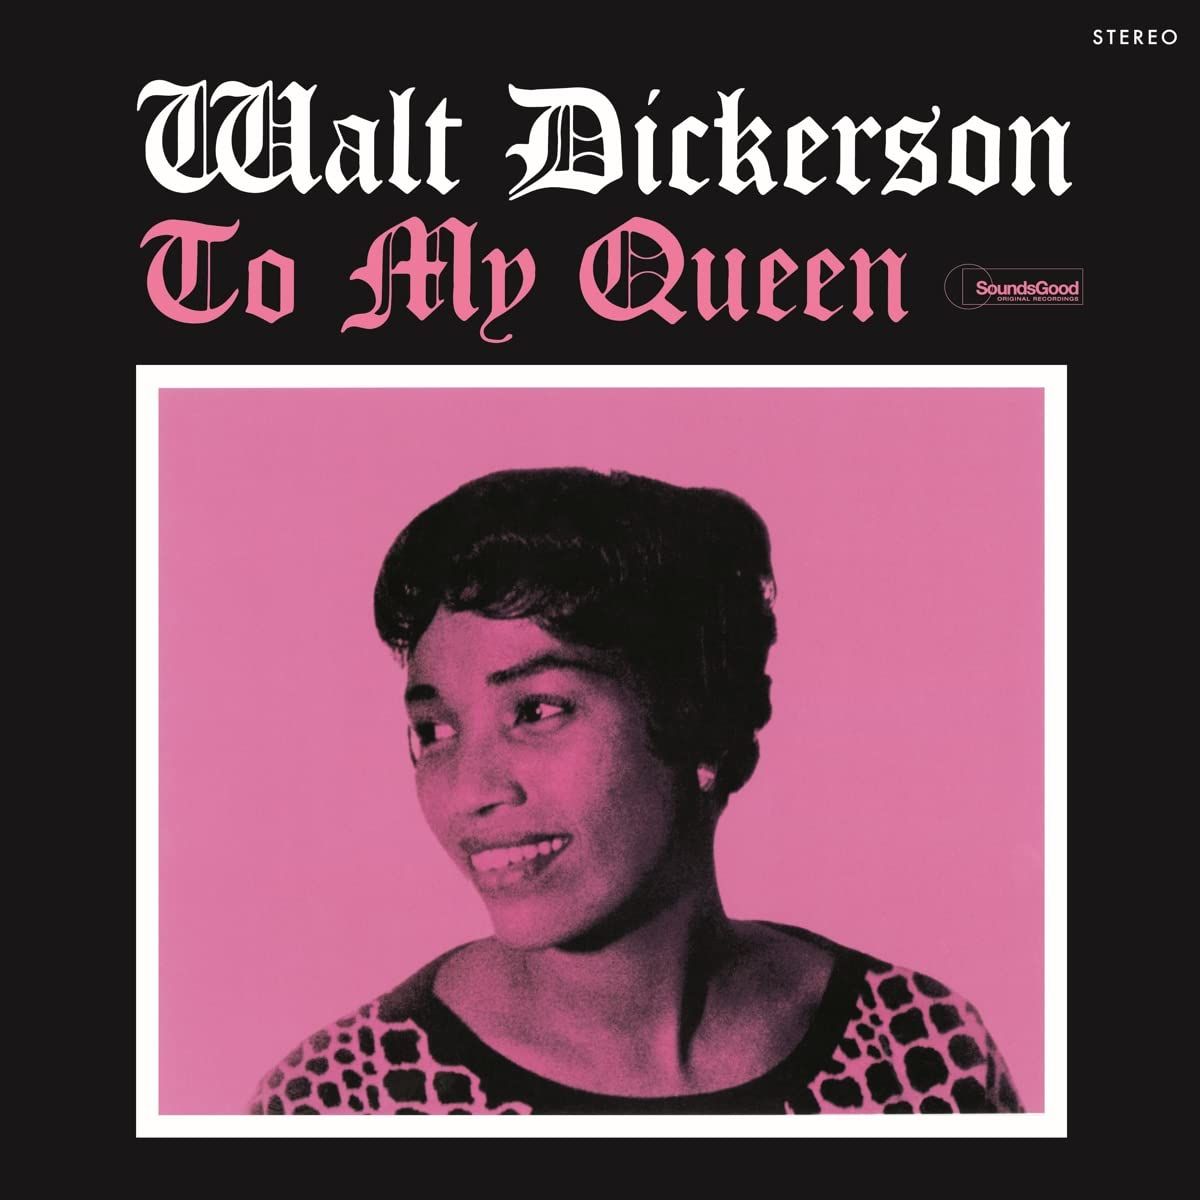 Виниловая пластинка Dickerson, Walt, To My Queen (8436563184574)